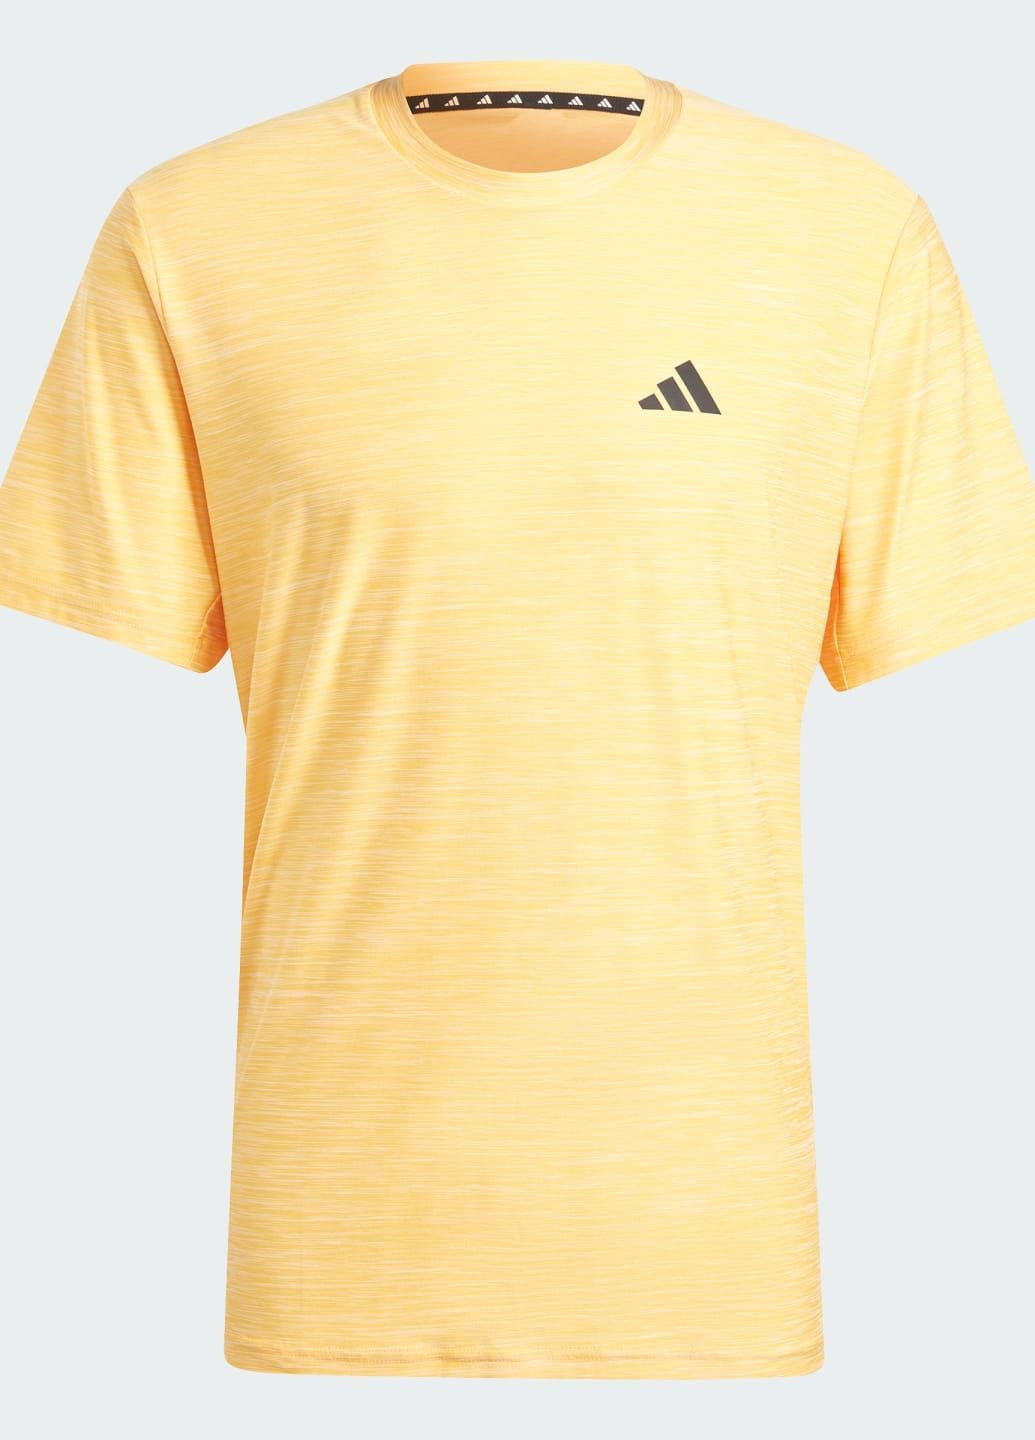 Оранжевая футболка train essentials stretch training adidas